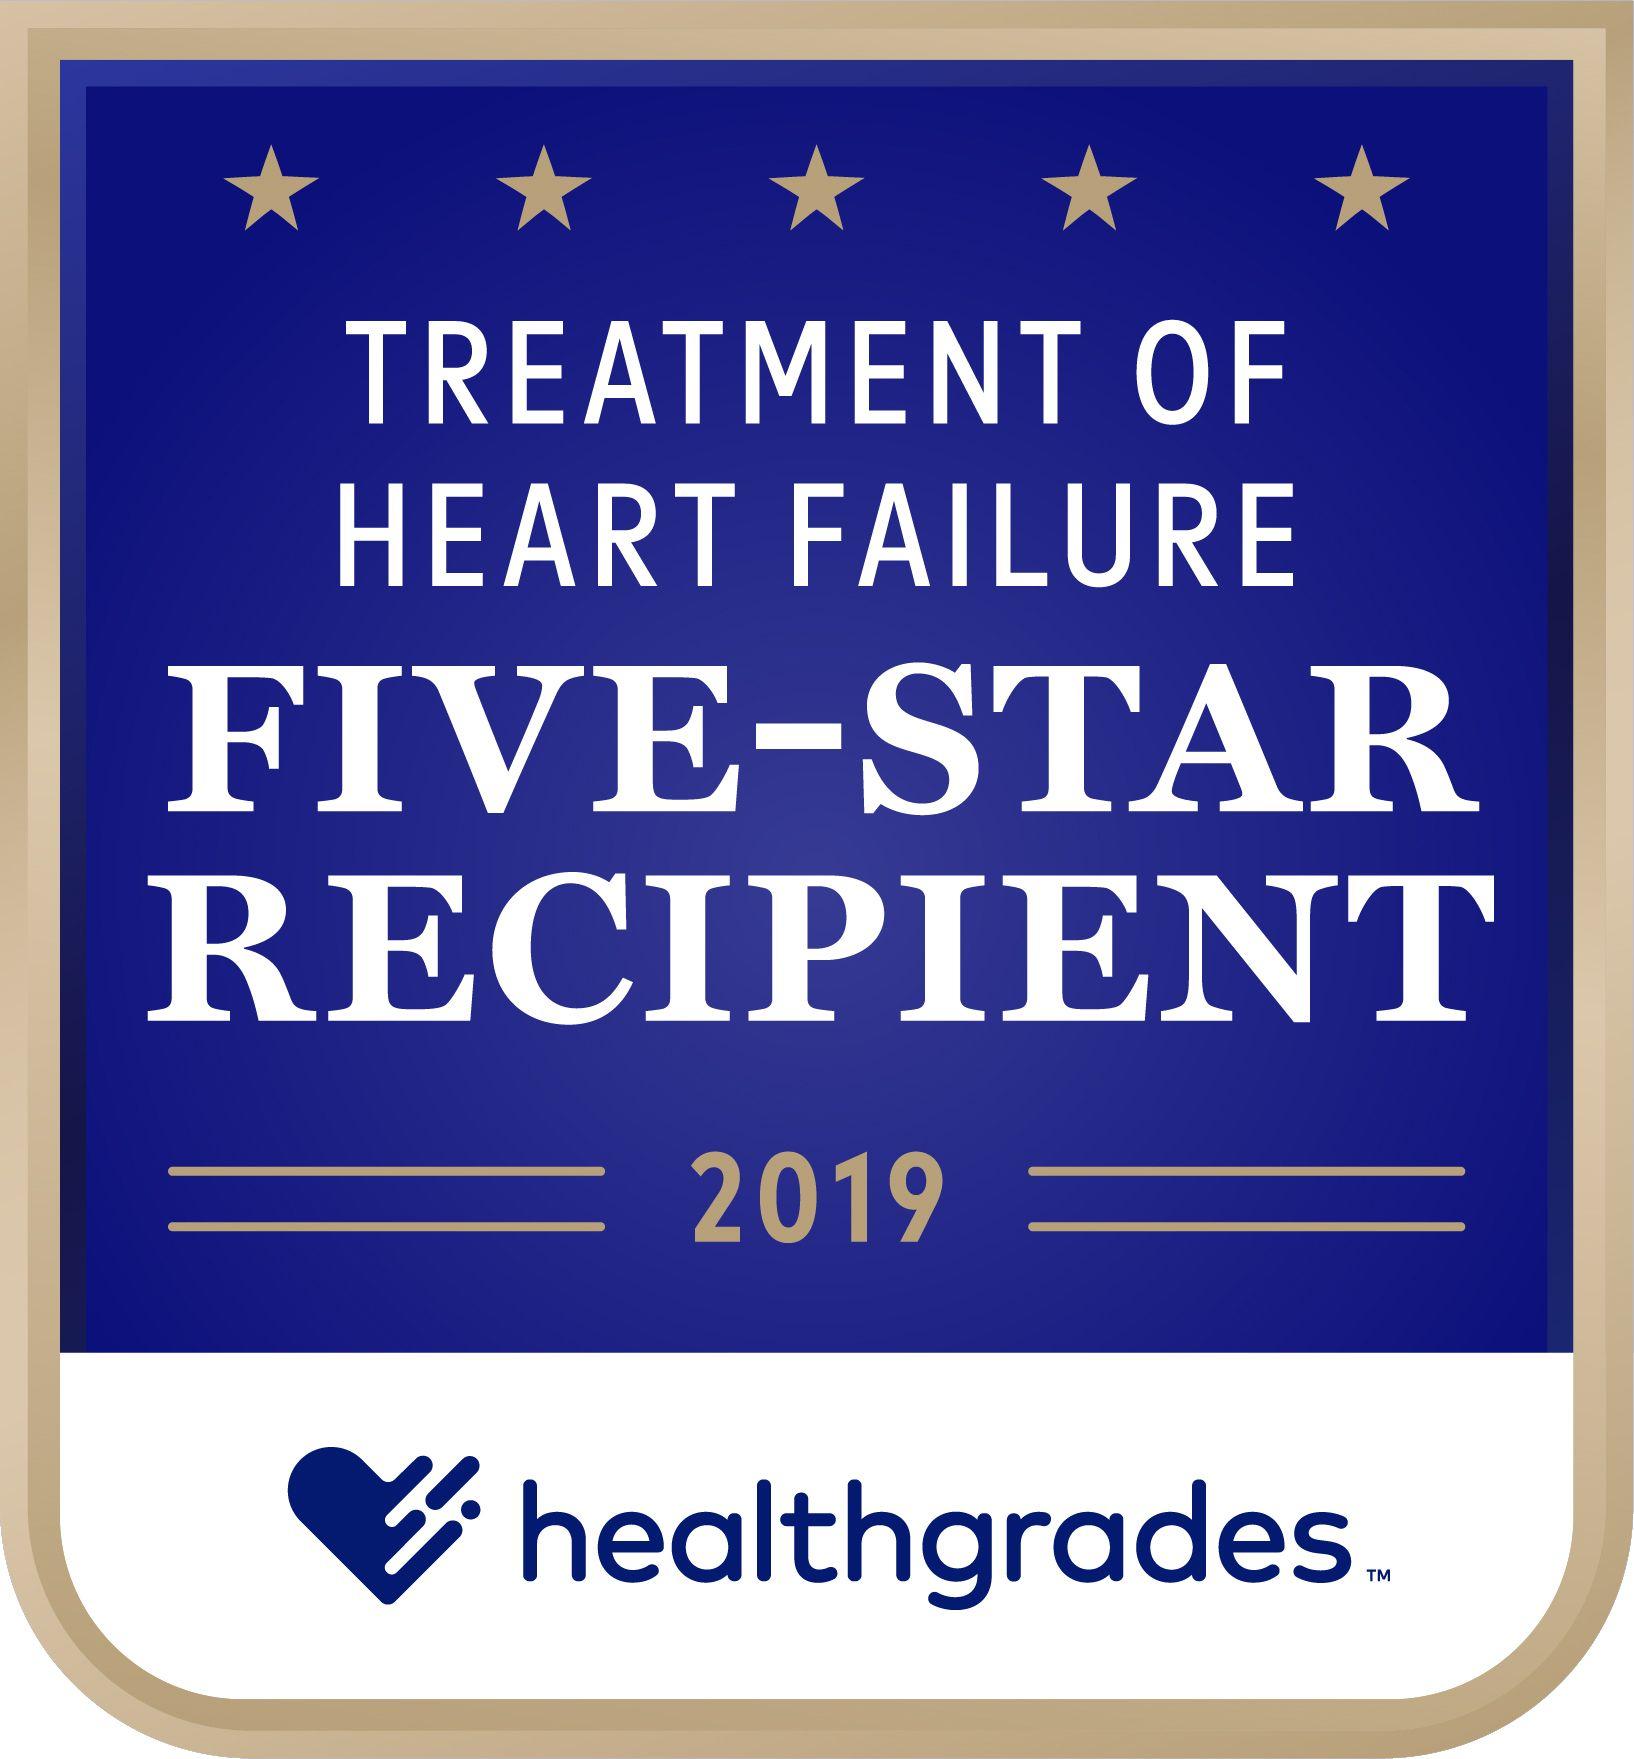 Healthgrades Heart Logo - Healthgrades Awards Best. Marin General Hospital